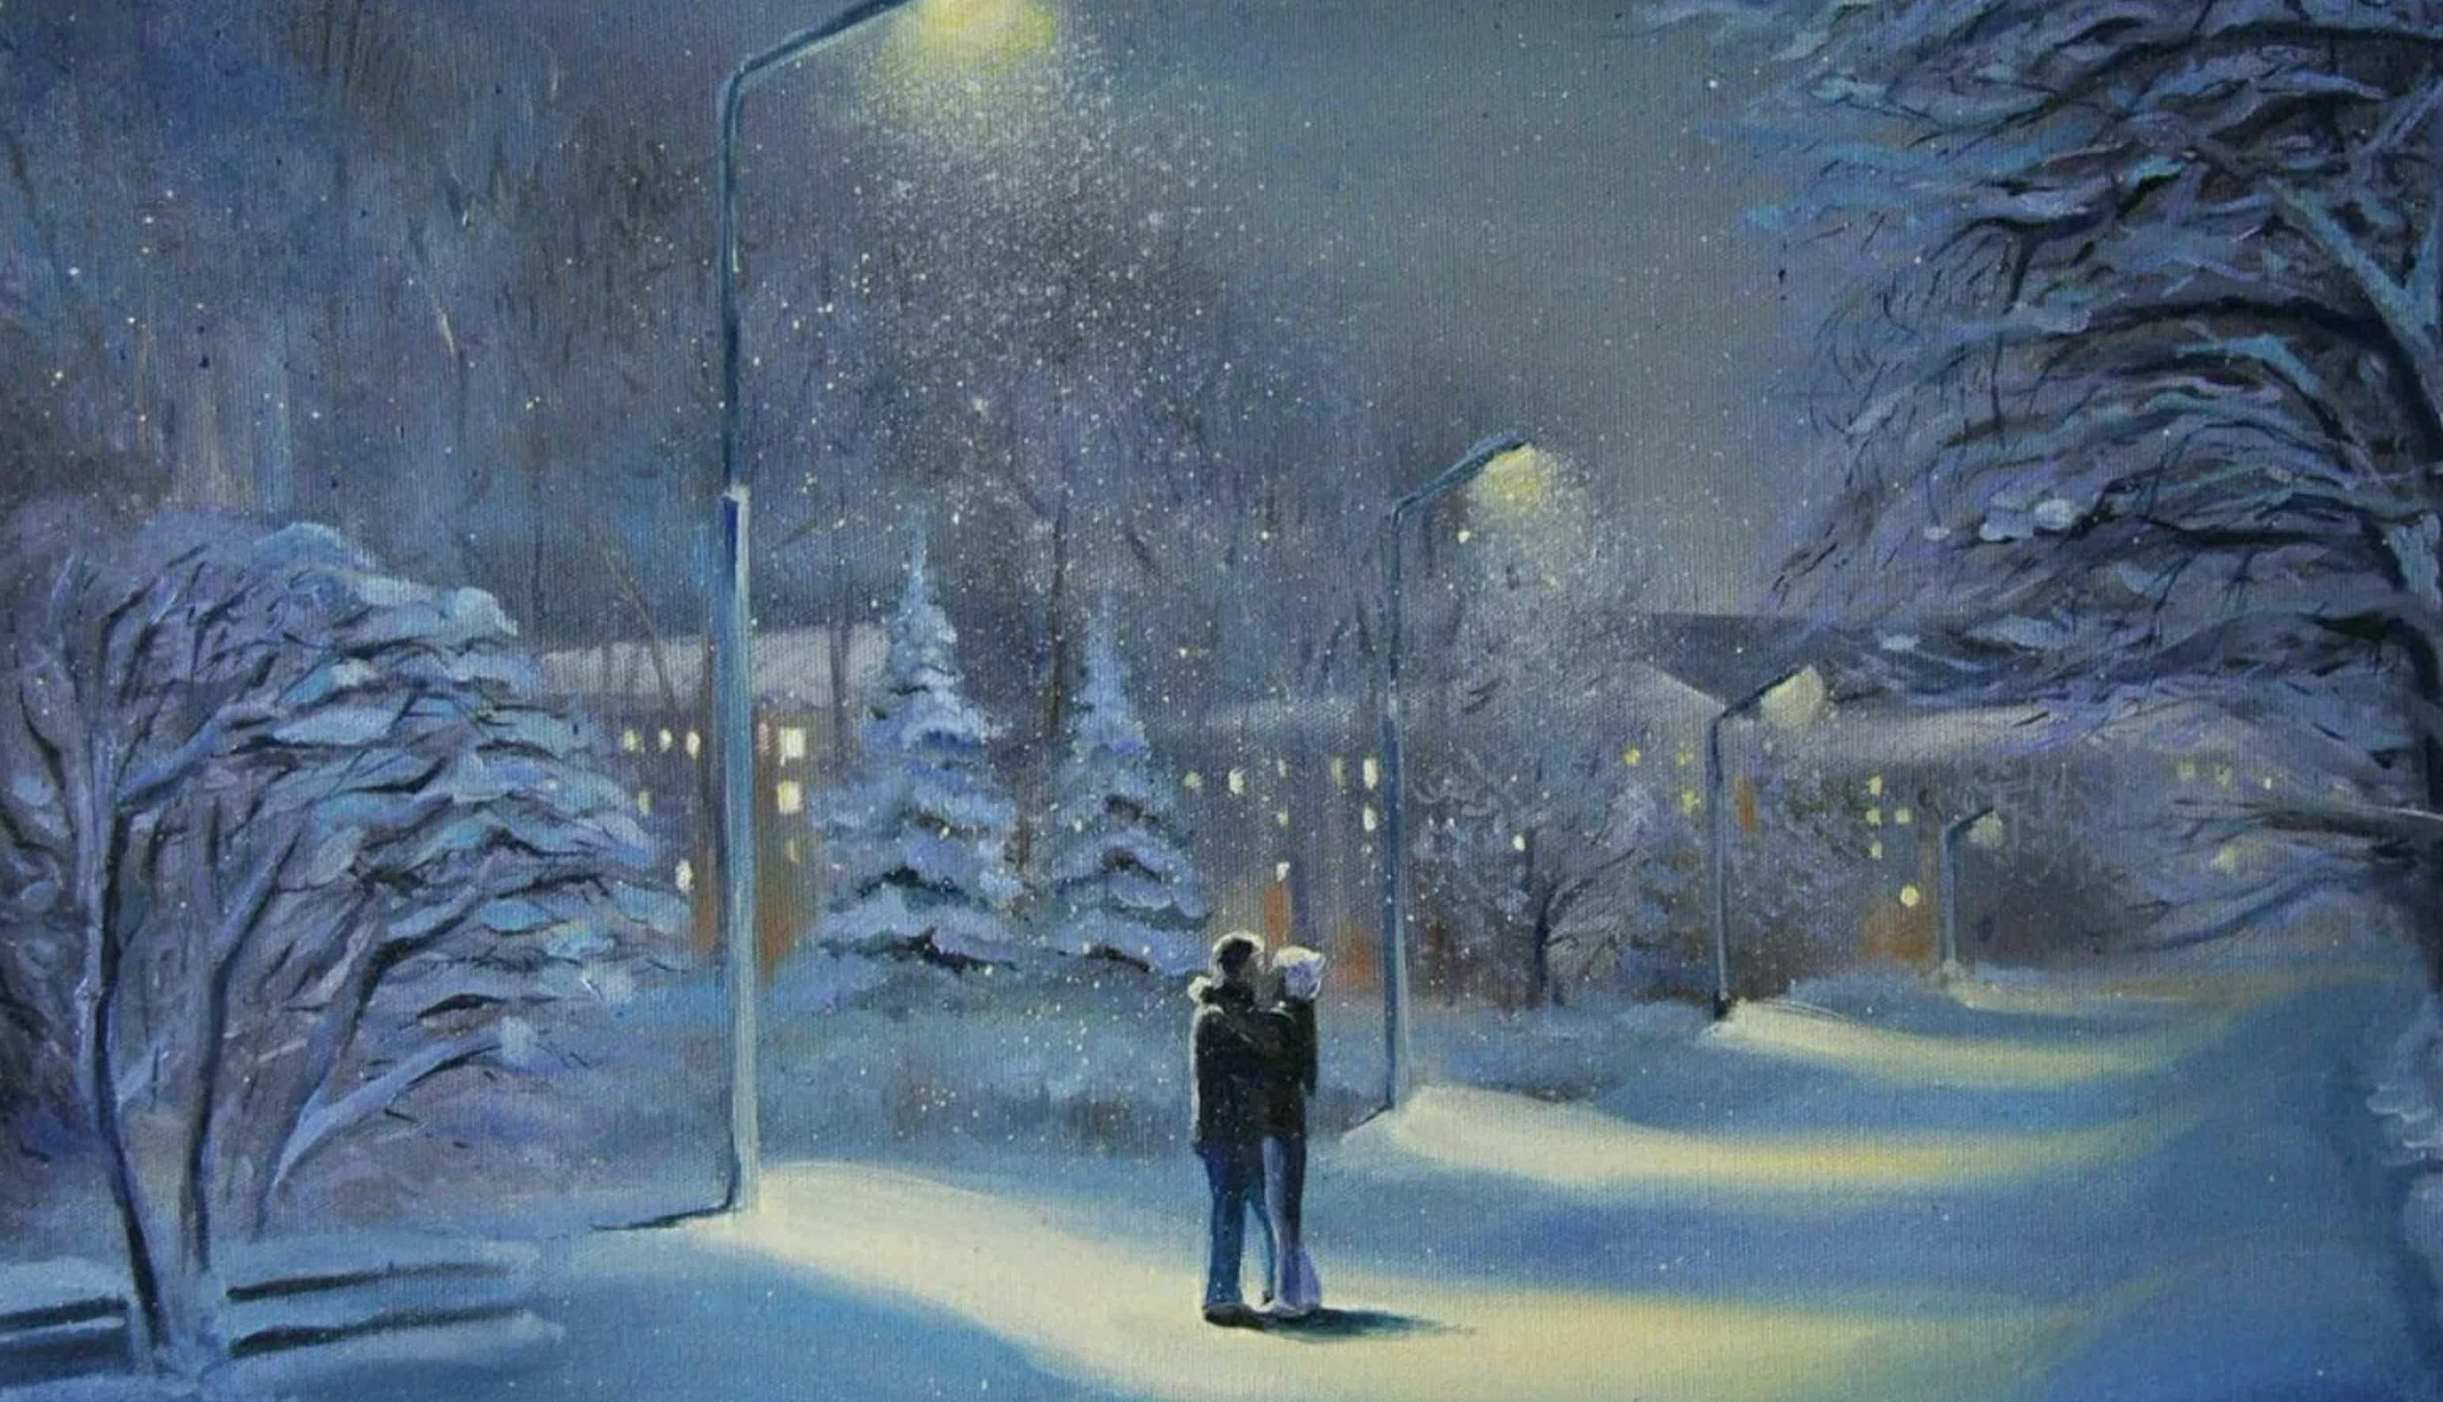 Стояла тихая морозная ночь. Зимний пейзаж в городе. Снег идет живопись. Зимний пейзаж с людьми. Зимний ночной пейзаж.